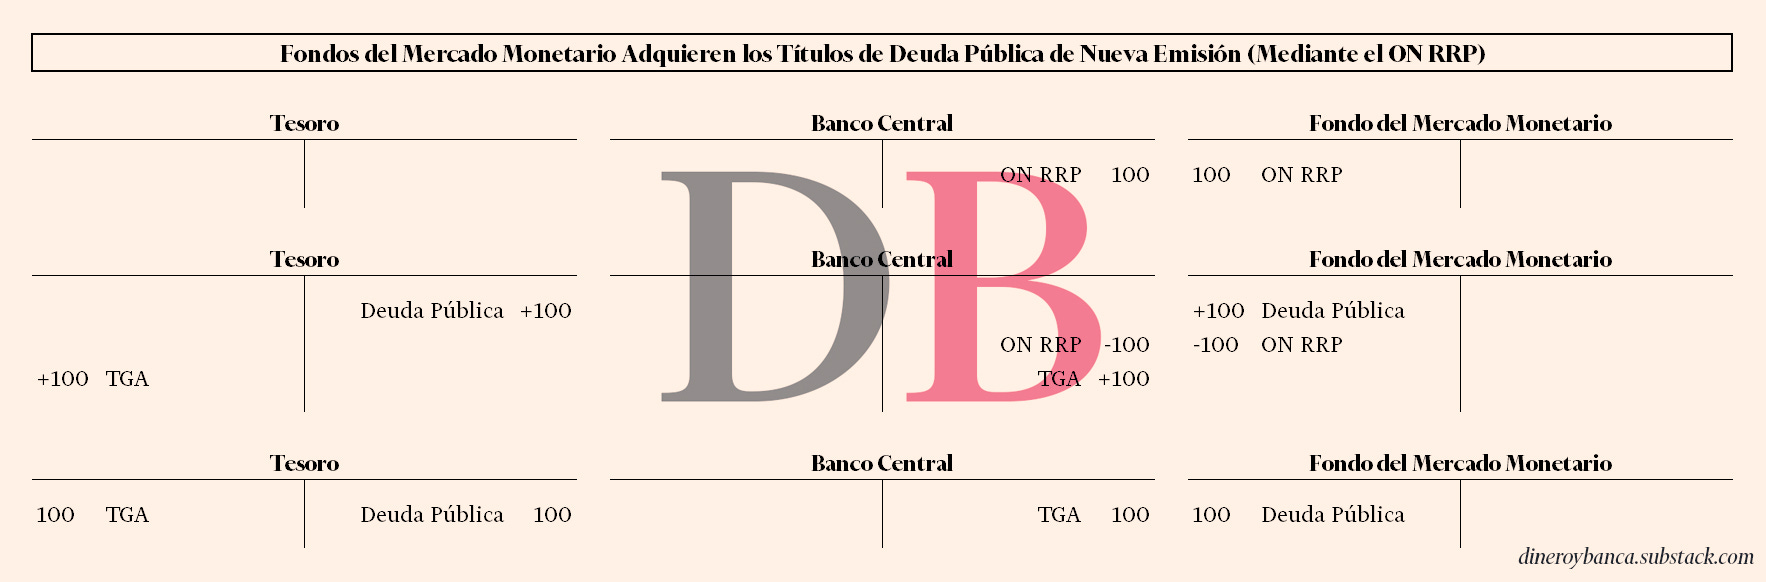 El fondo del mercado monetario compra la nueva deuda usando sus ON RRP